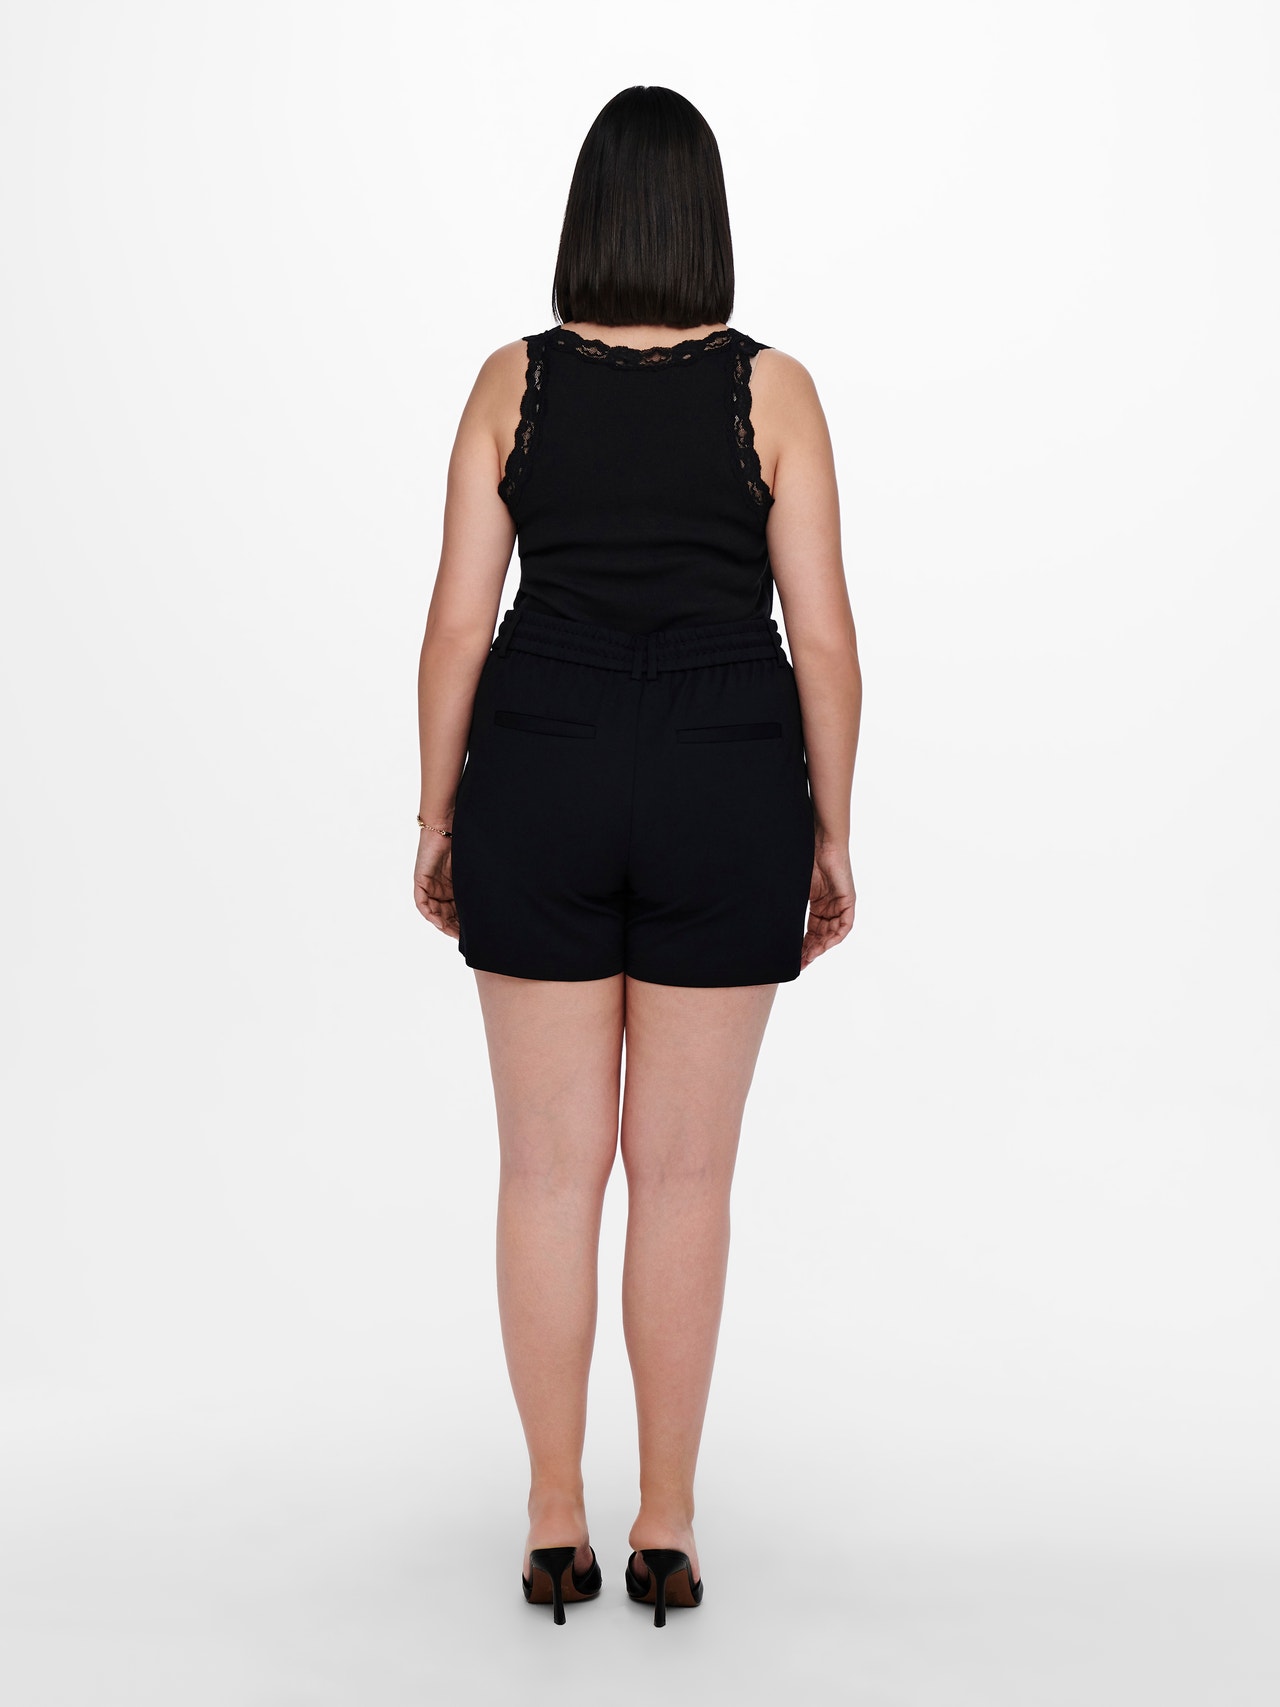 ONLY Shorts Regular Fit -Black - 15177161